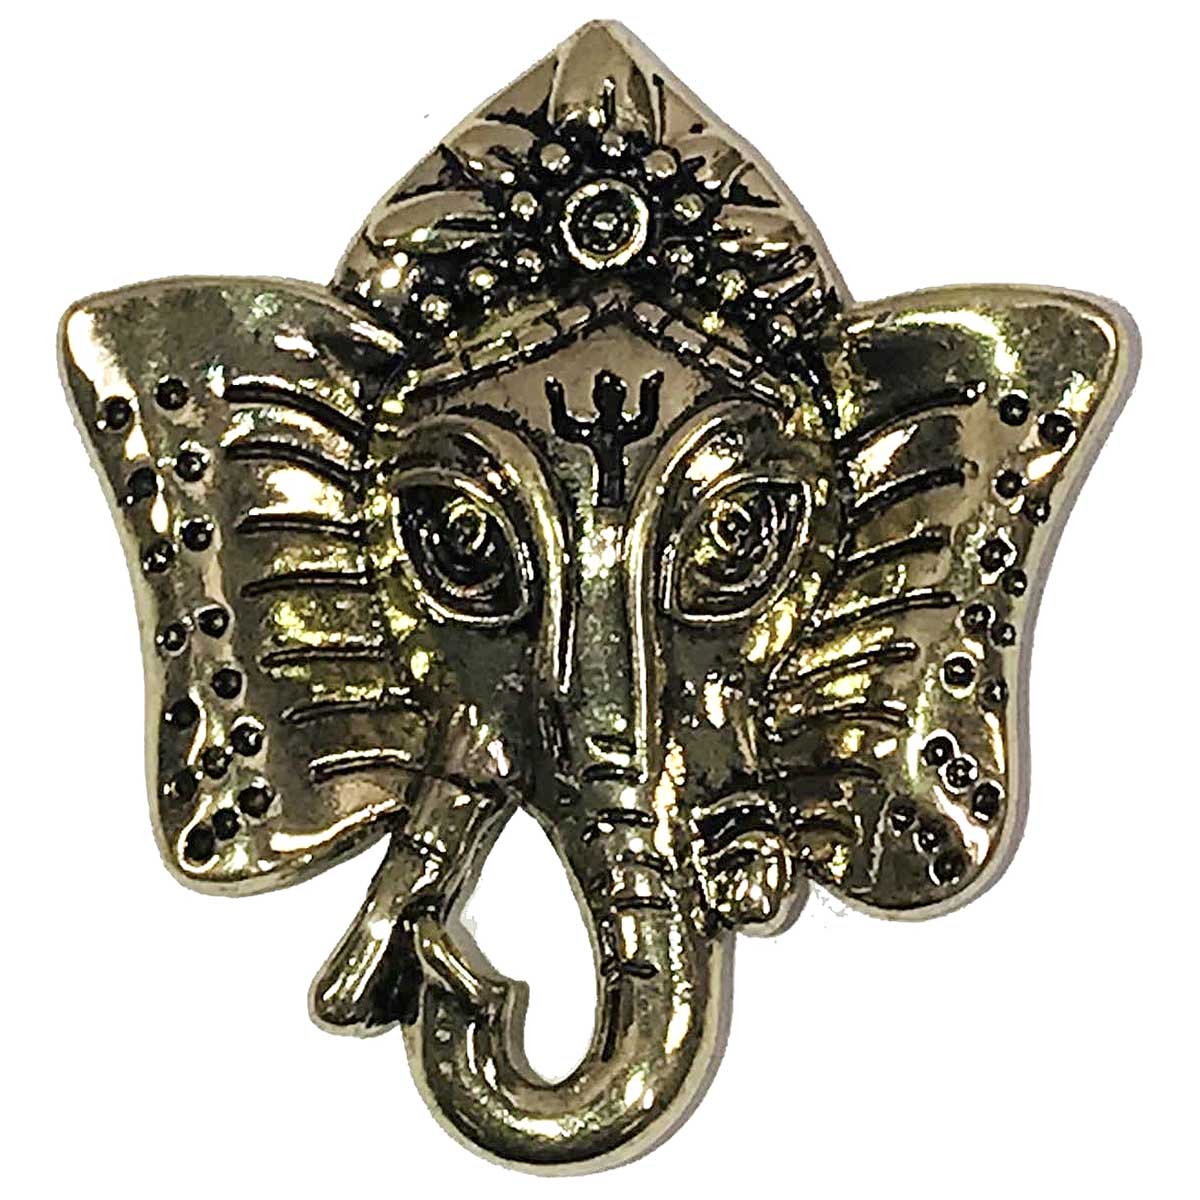 531 Bronze Ganesha Elephant